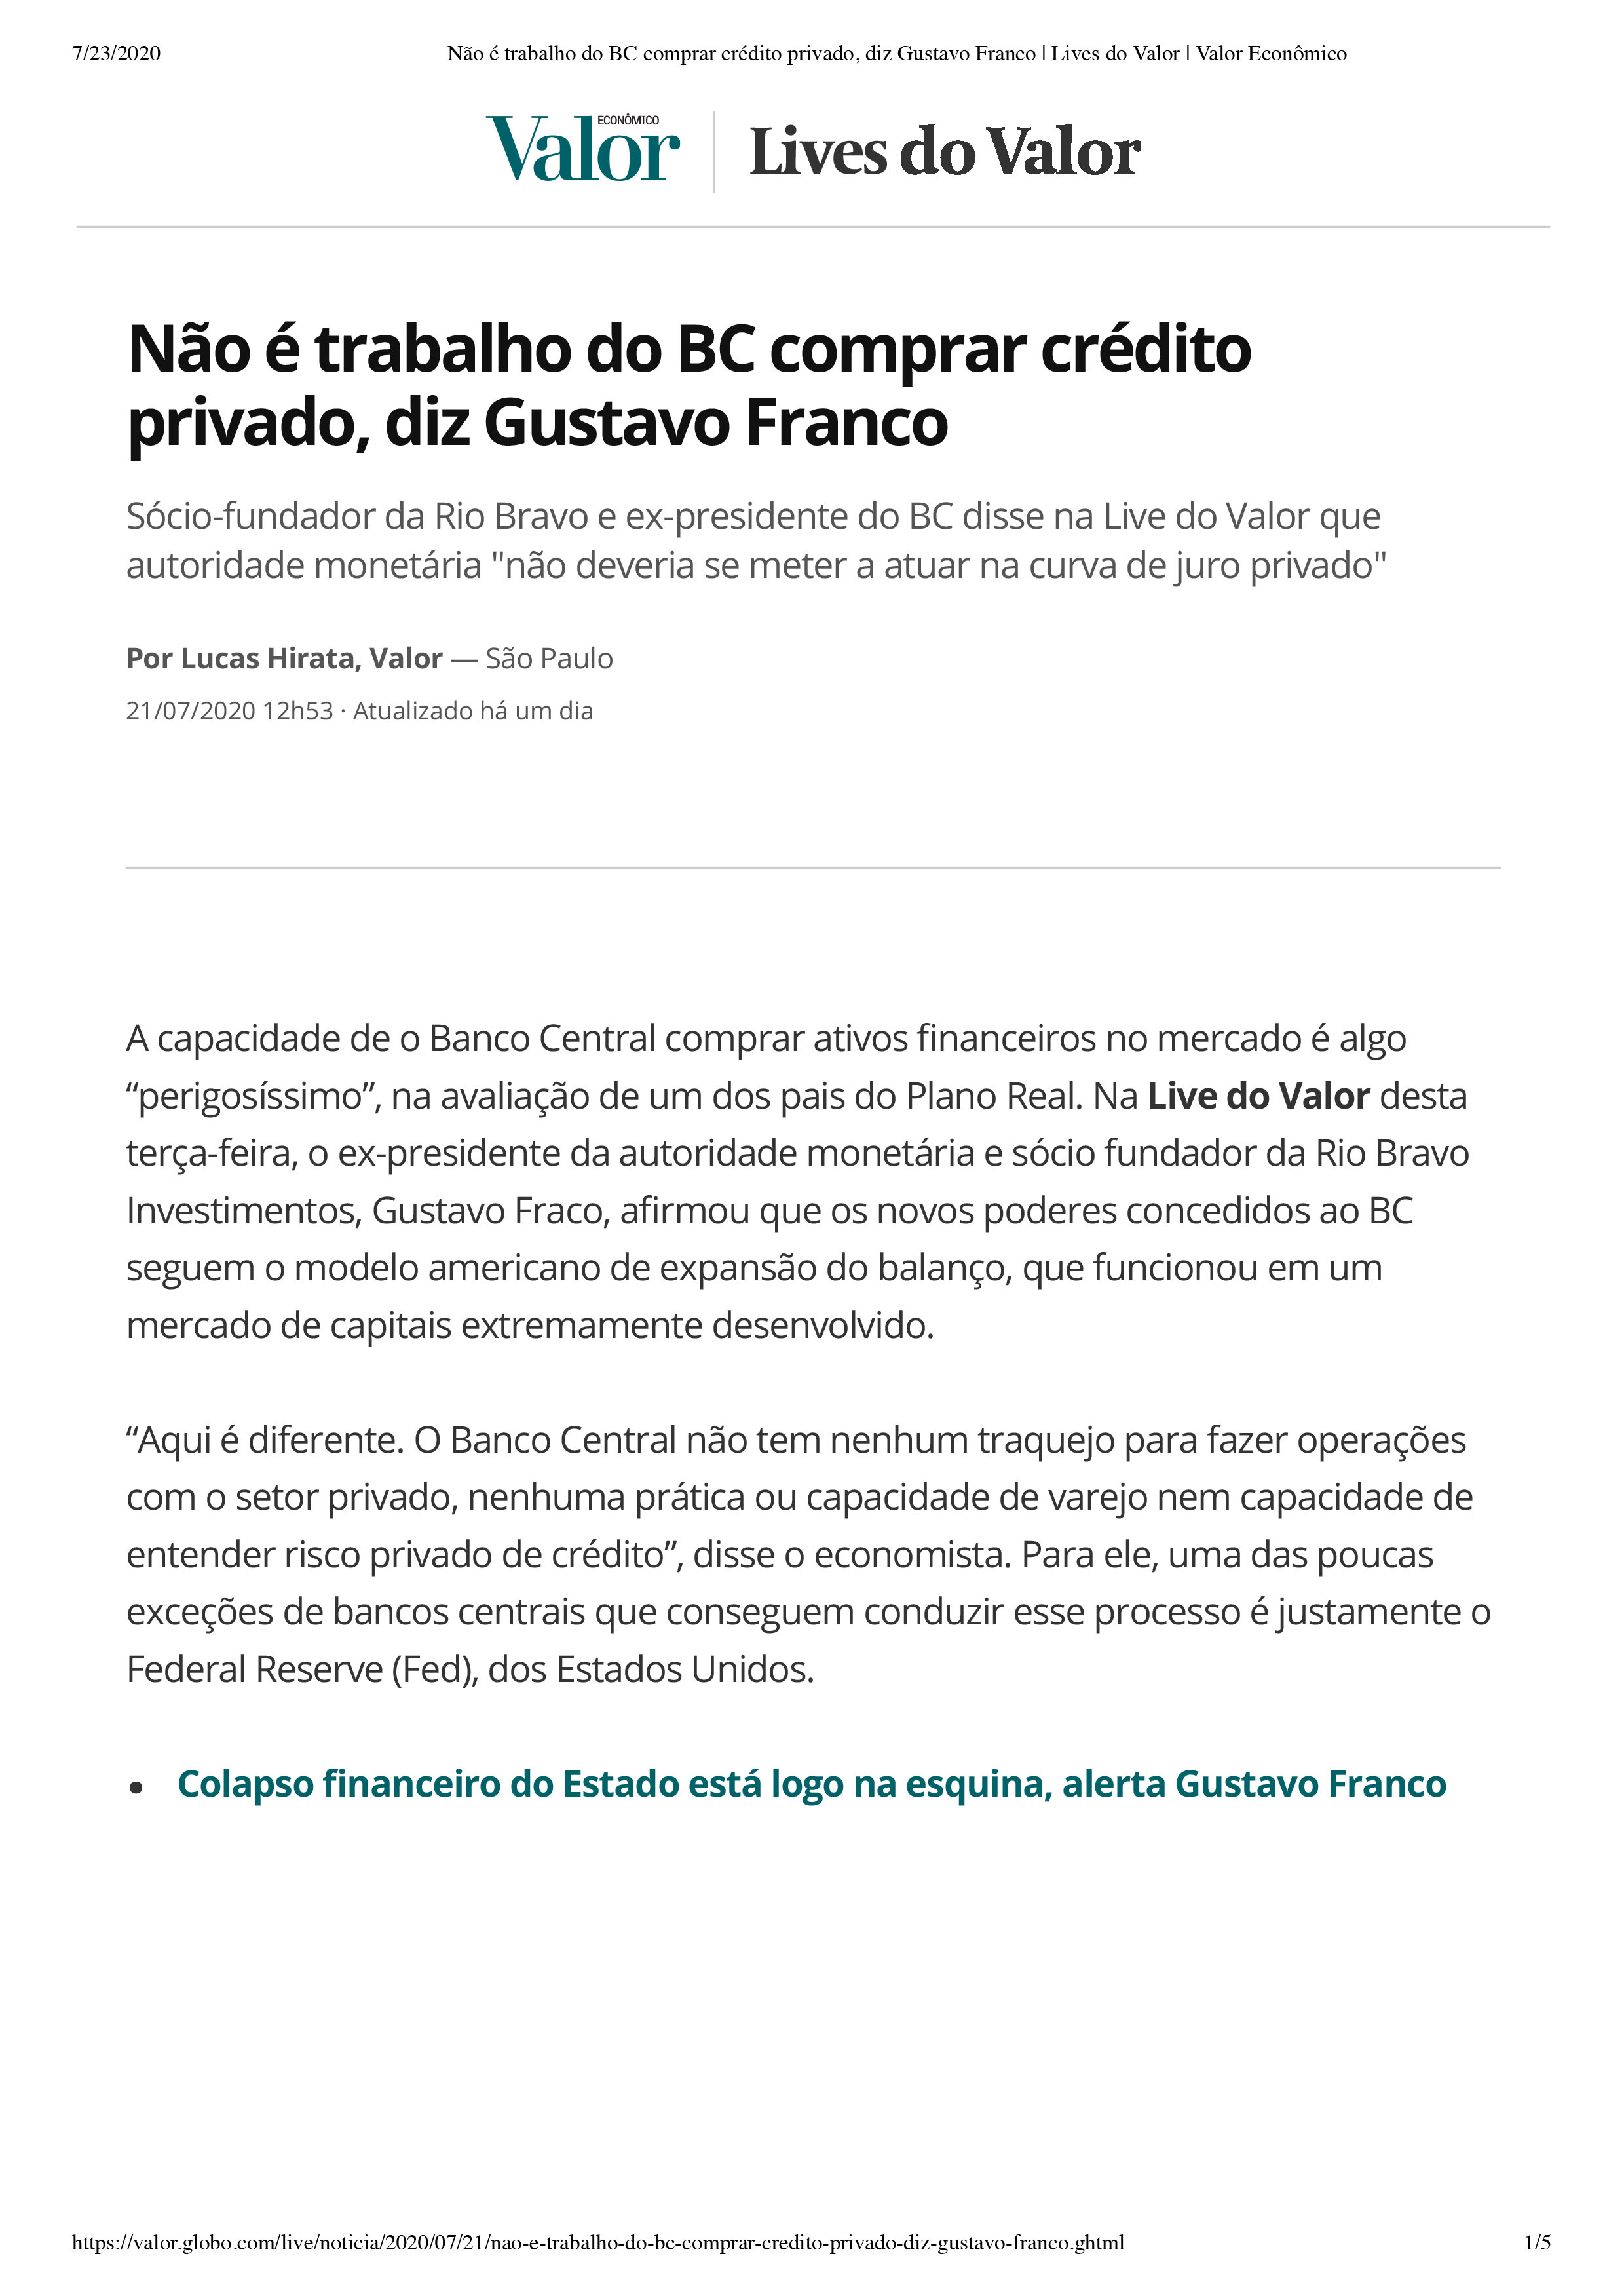 Não é trabalho do BC comprar crédito privado, diz Gustavo Franco